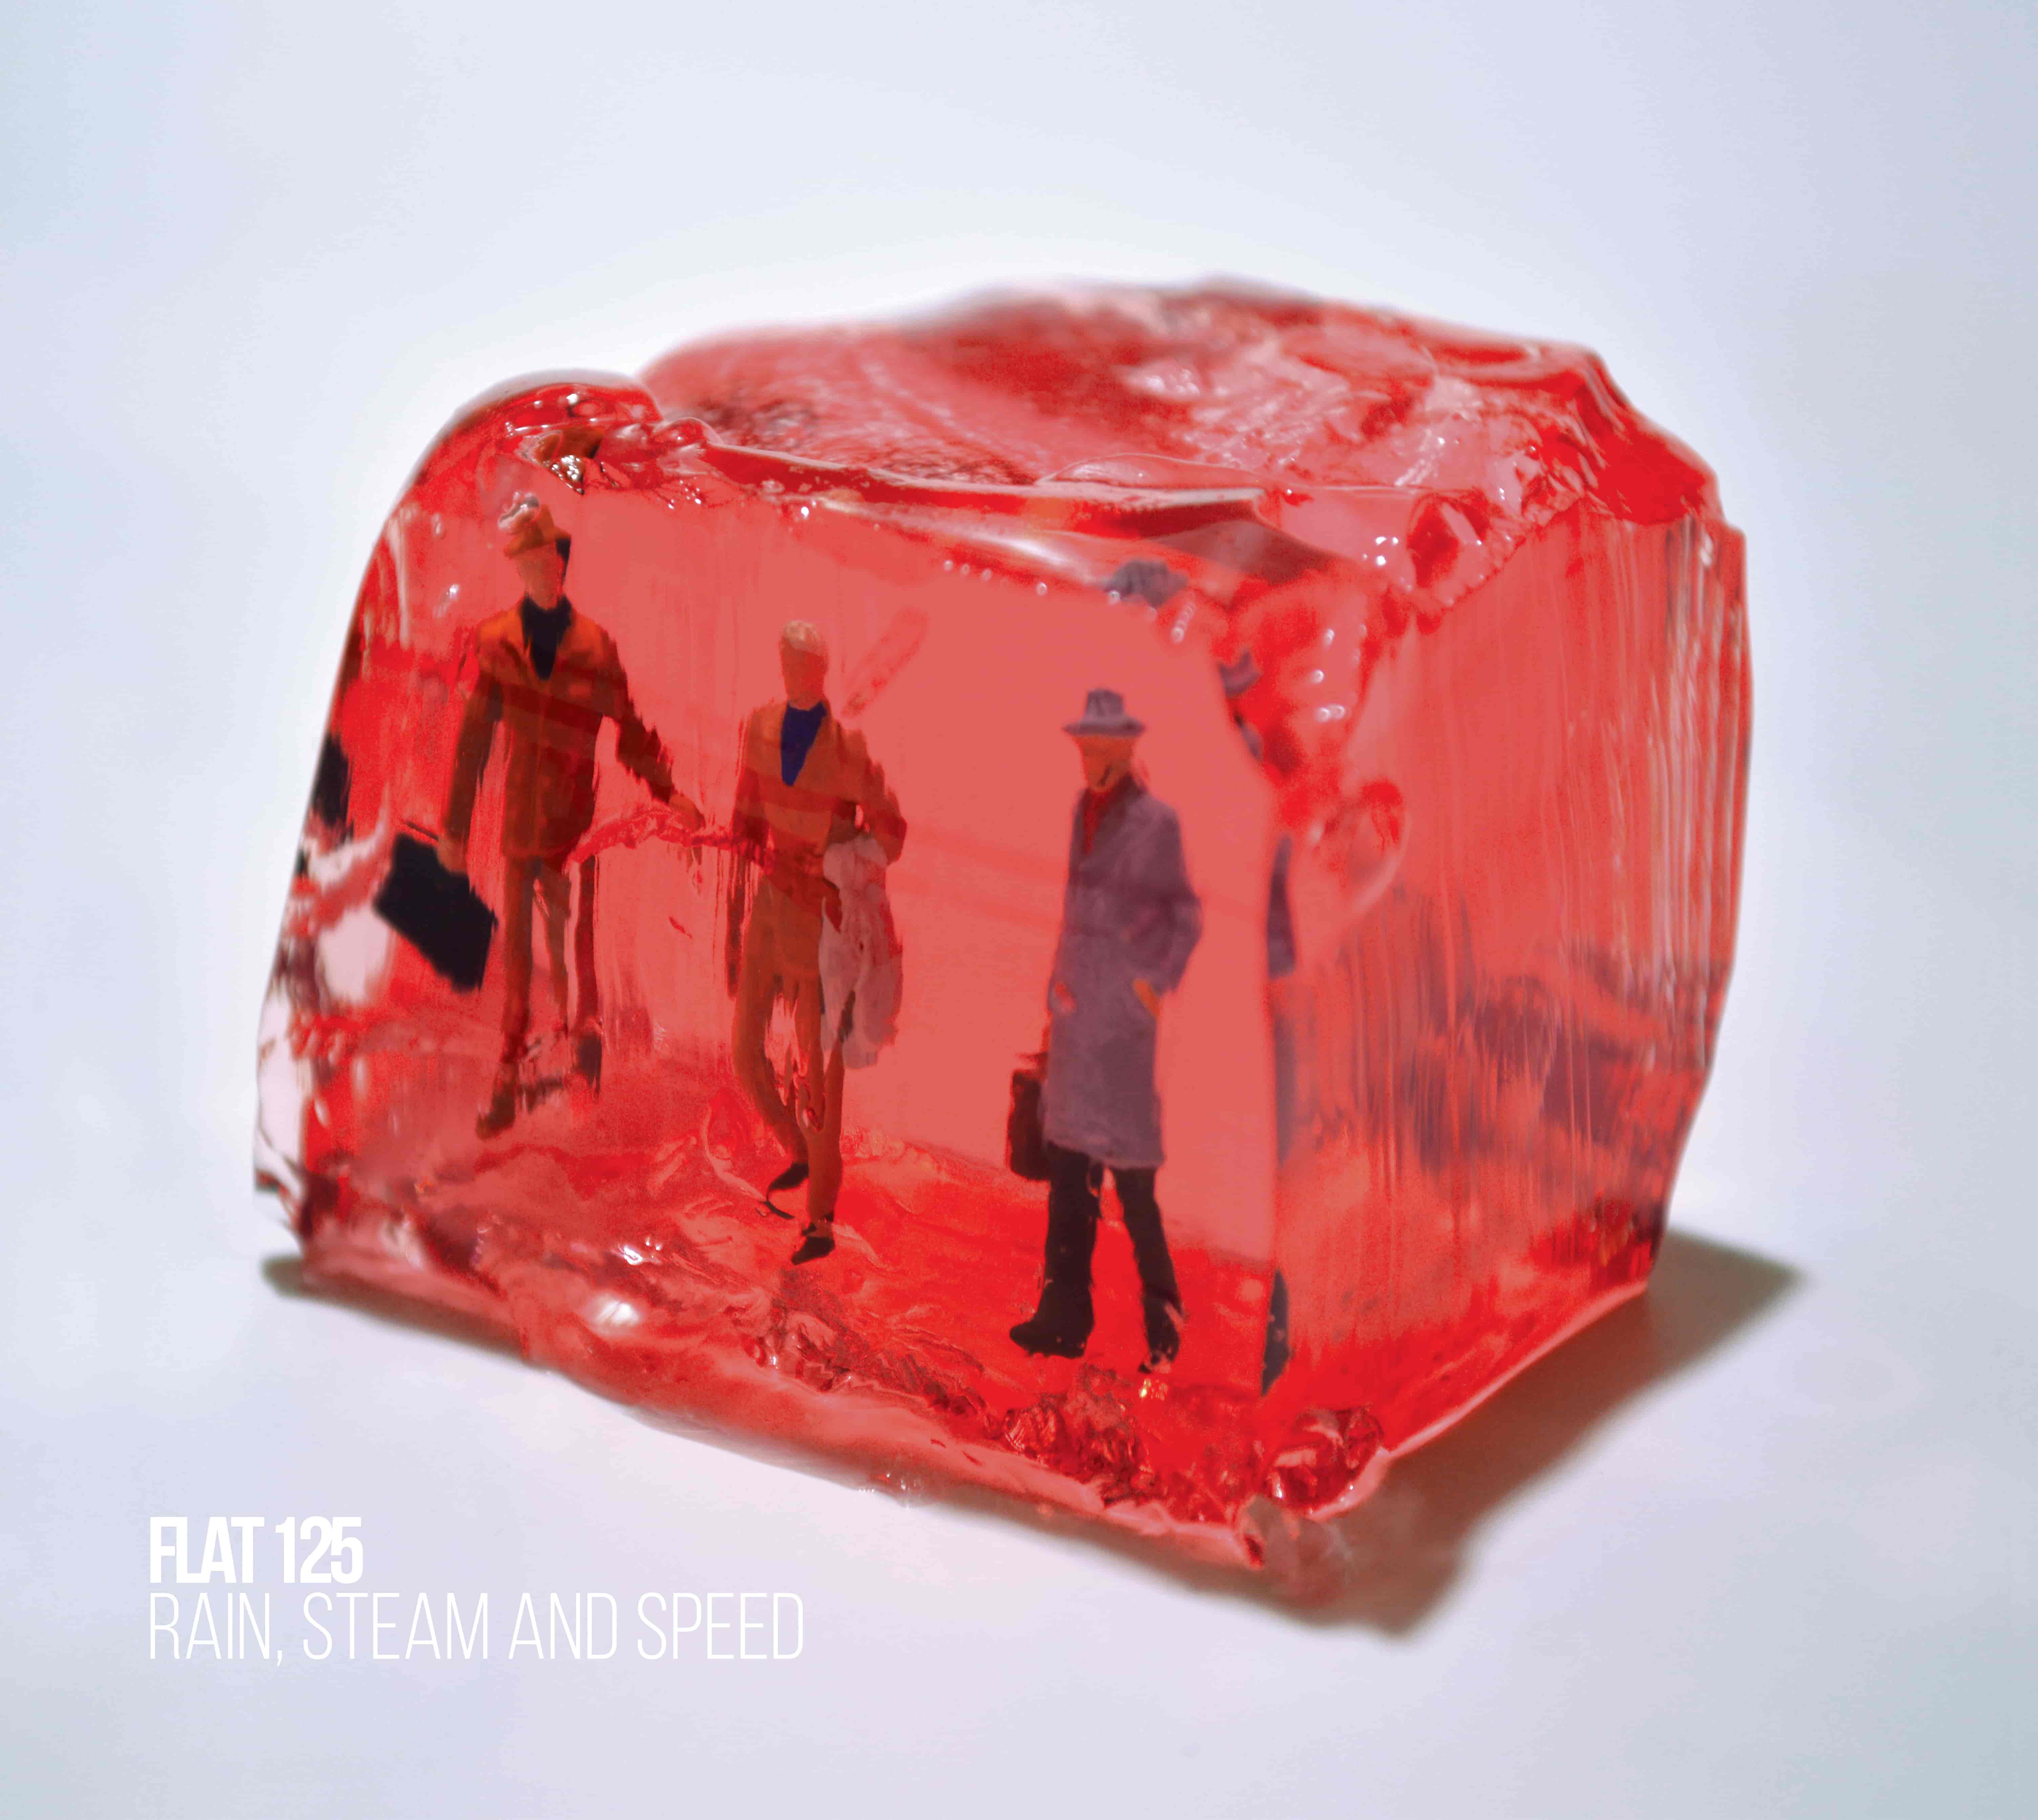 FLAT 125: esce il 10 maggio l’album “Rain, Steam and Speed” (MiaCameretta Records)